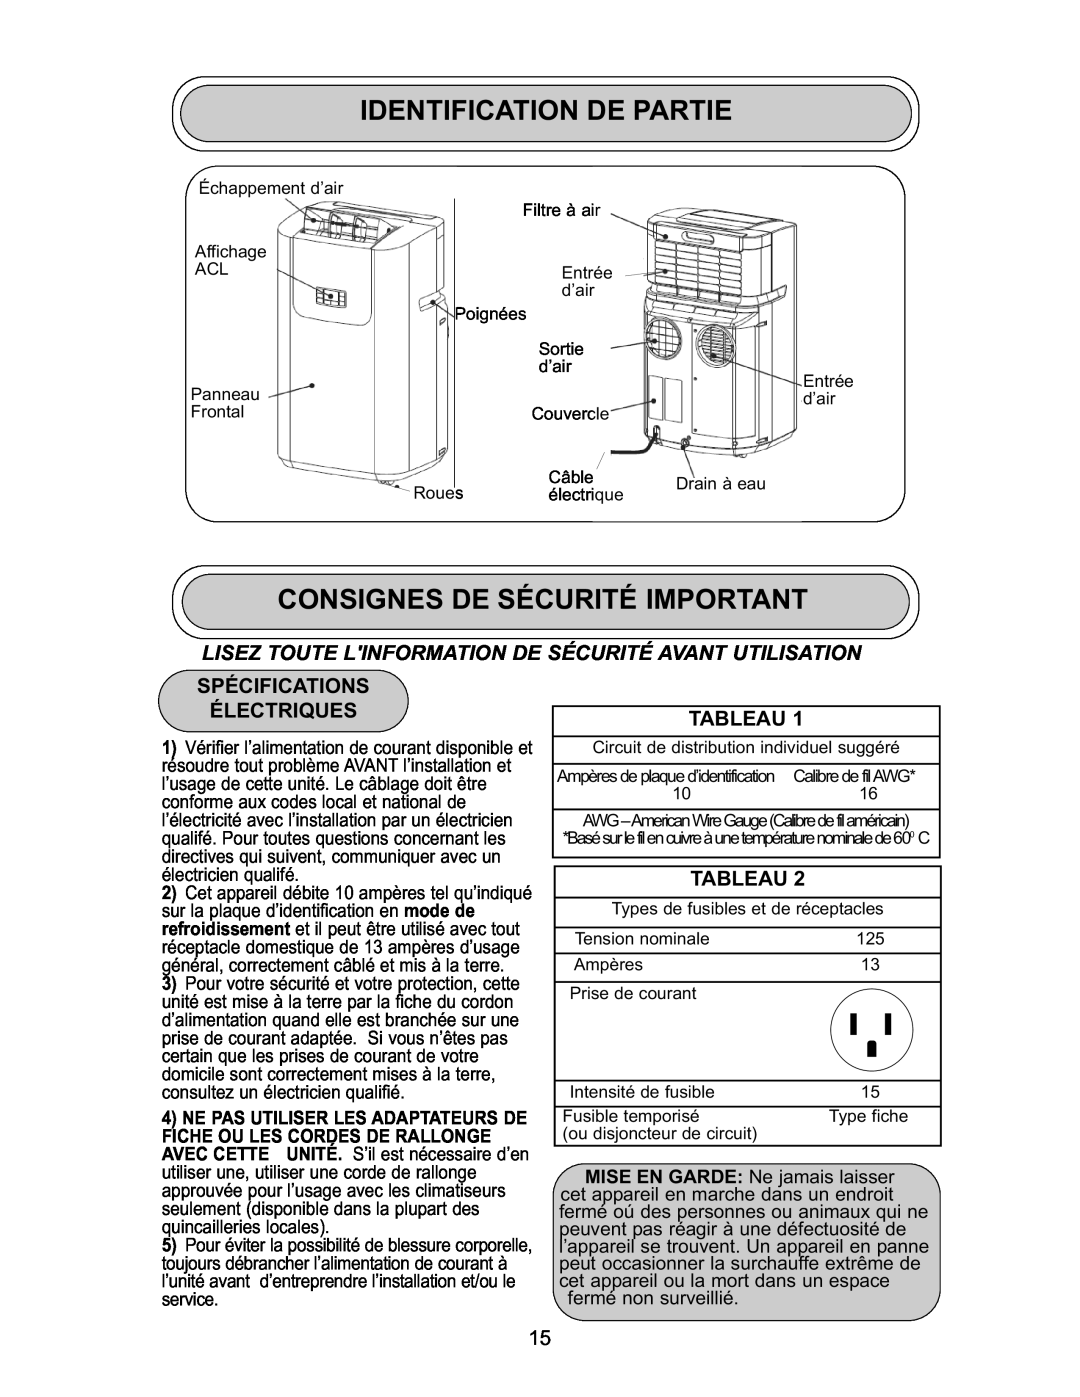 Danby DPAC 9009 manual Identification De Partie, Consignes De Sécurité Important, Spécifications Électriques, Tableau 